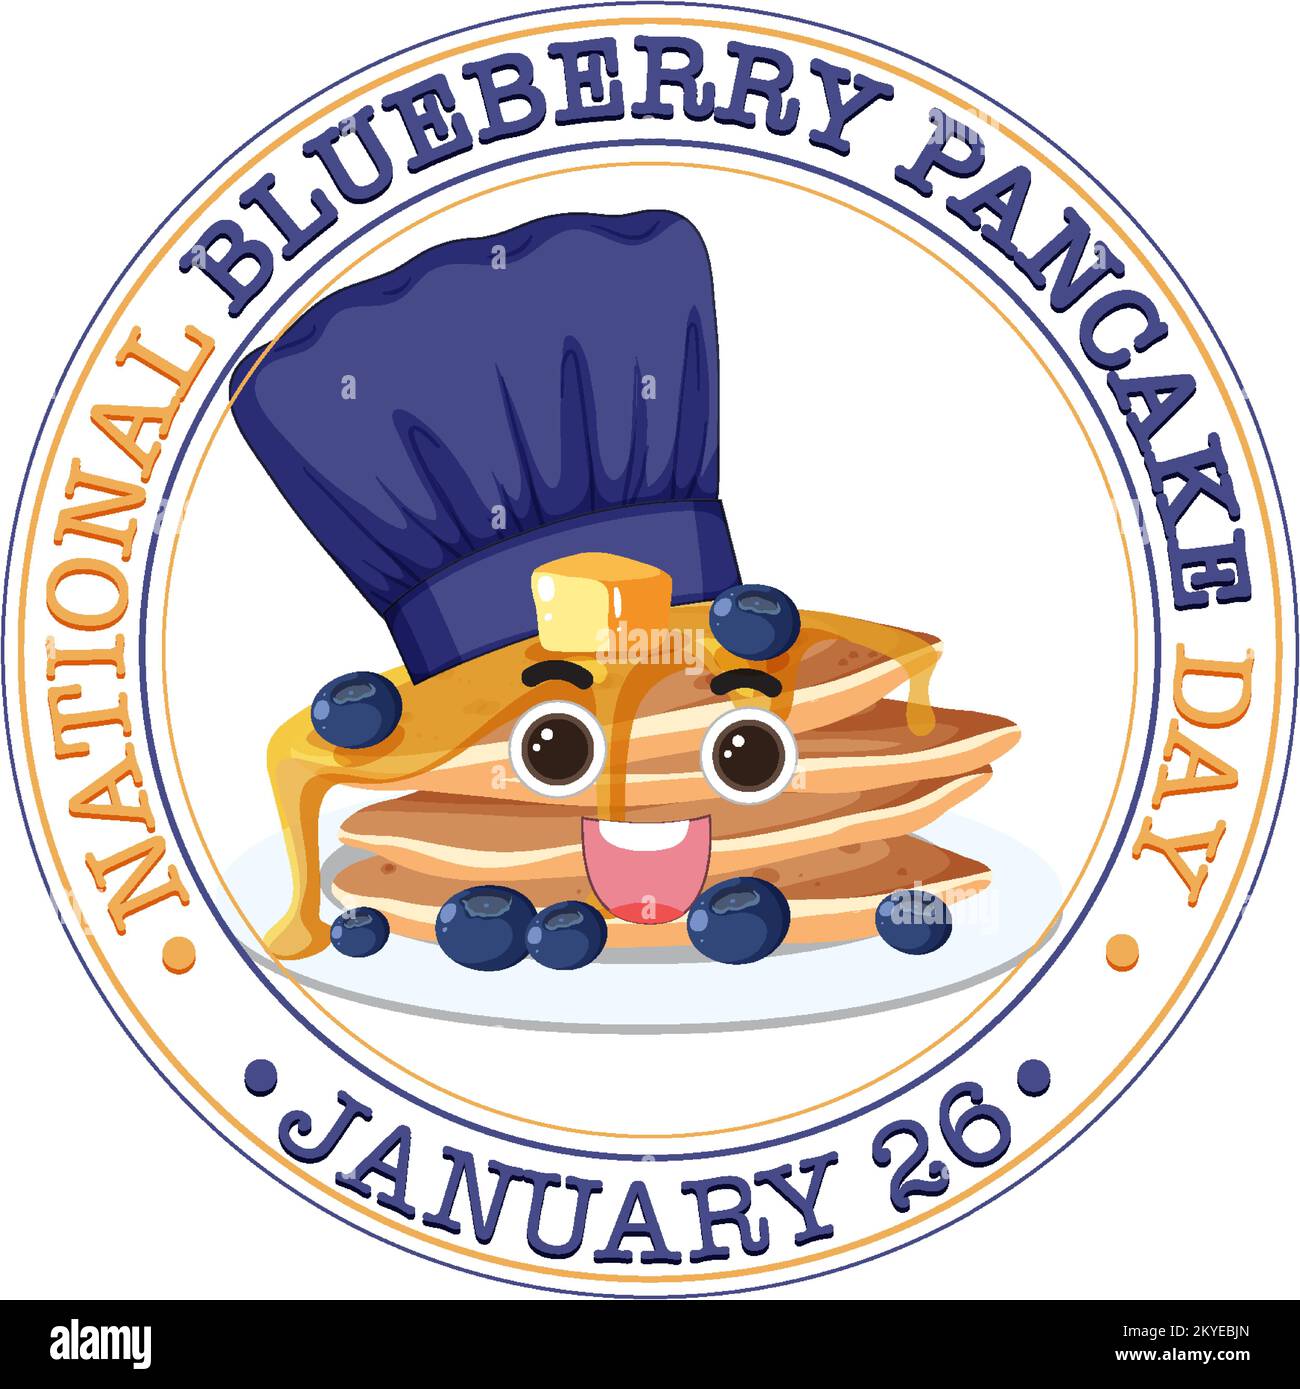 National Blueberry Pancake Day Banner illustration Stock Vector